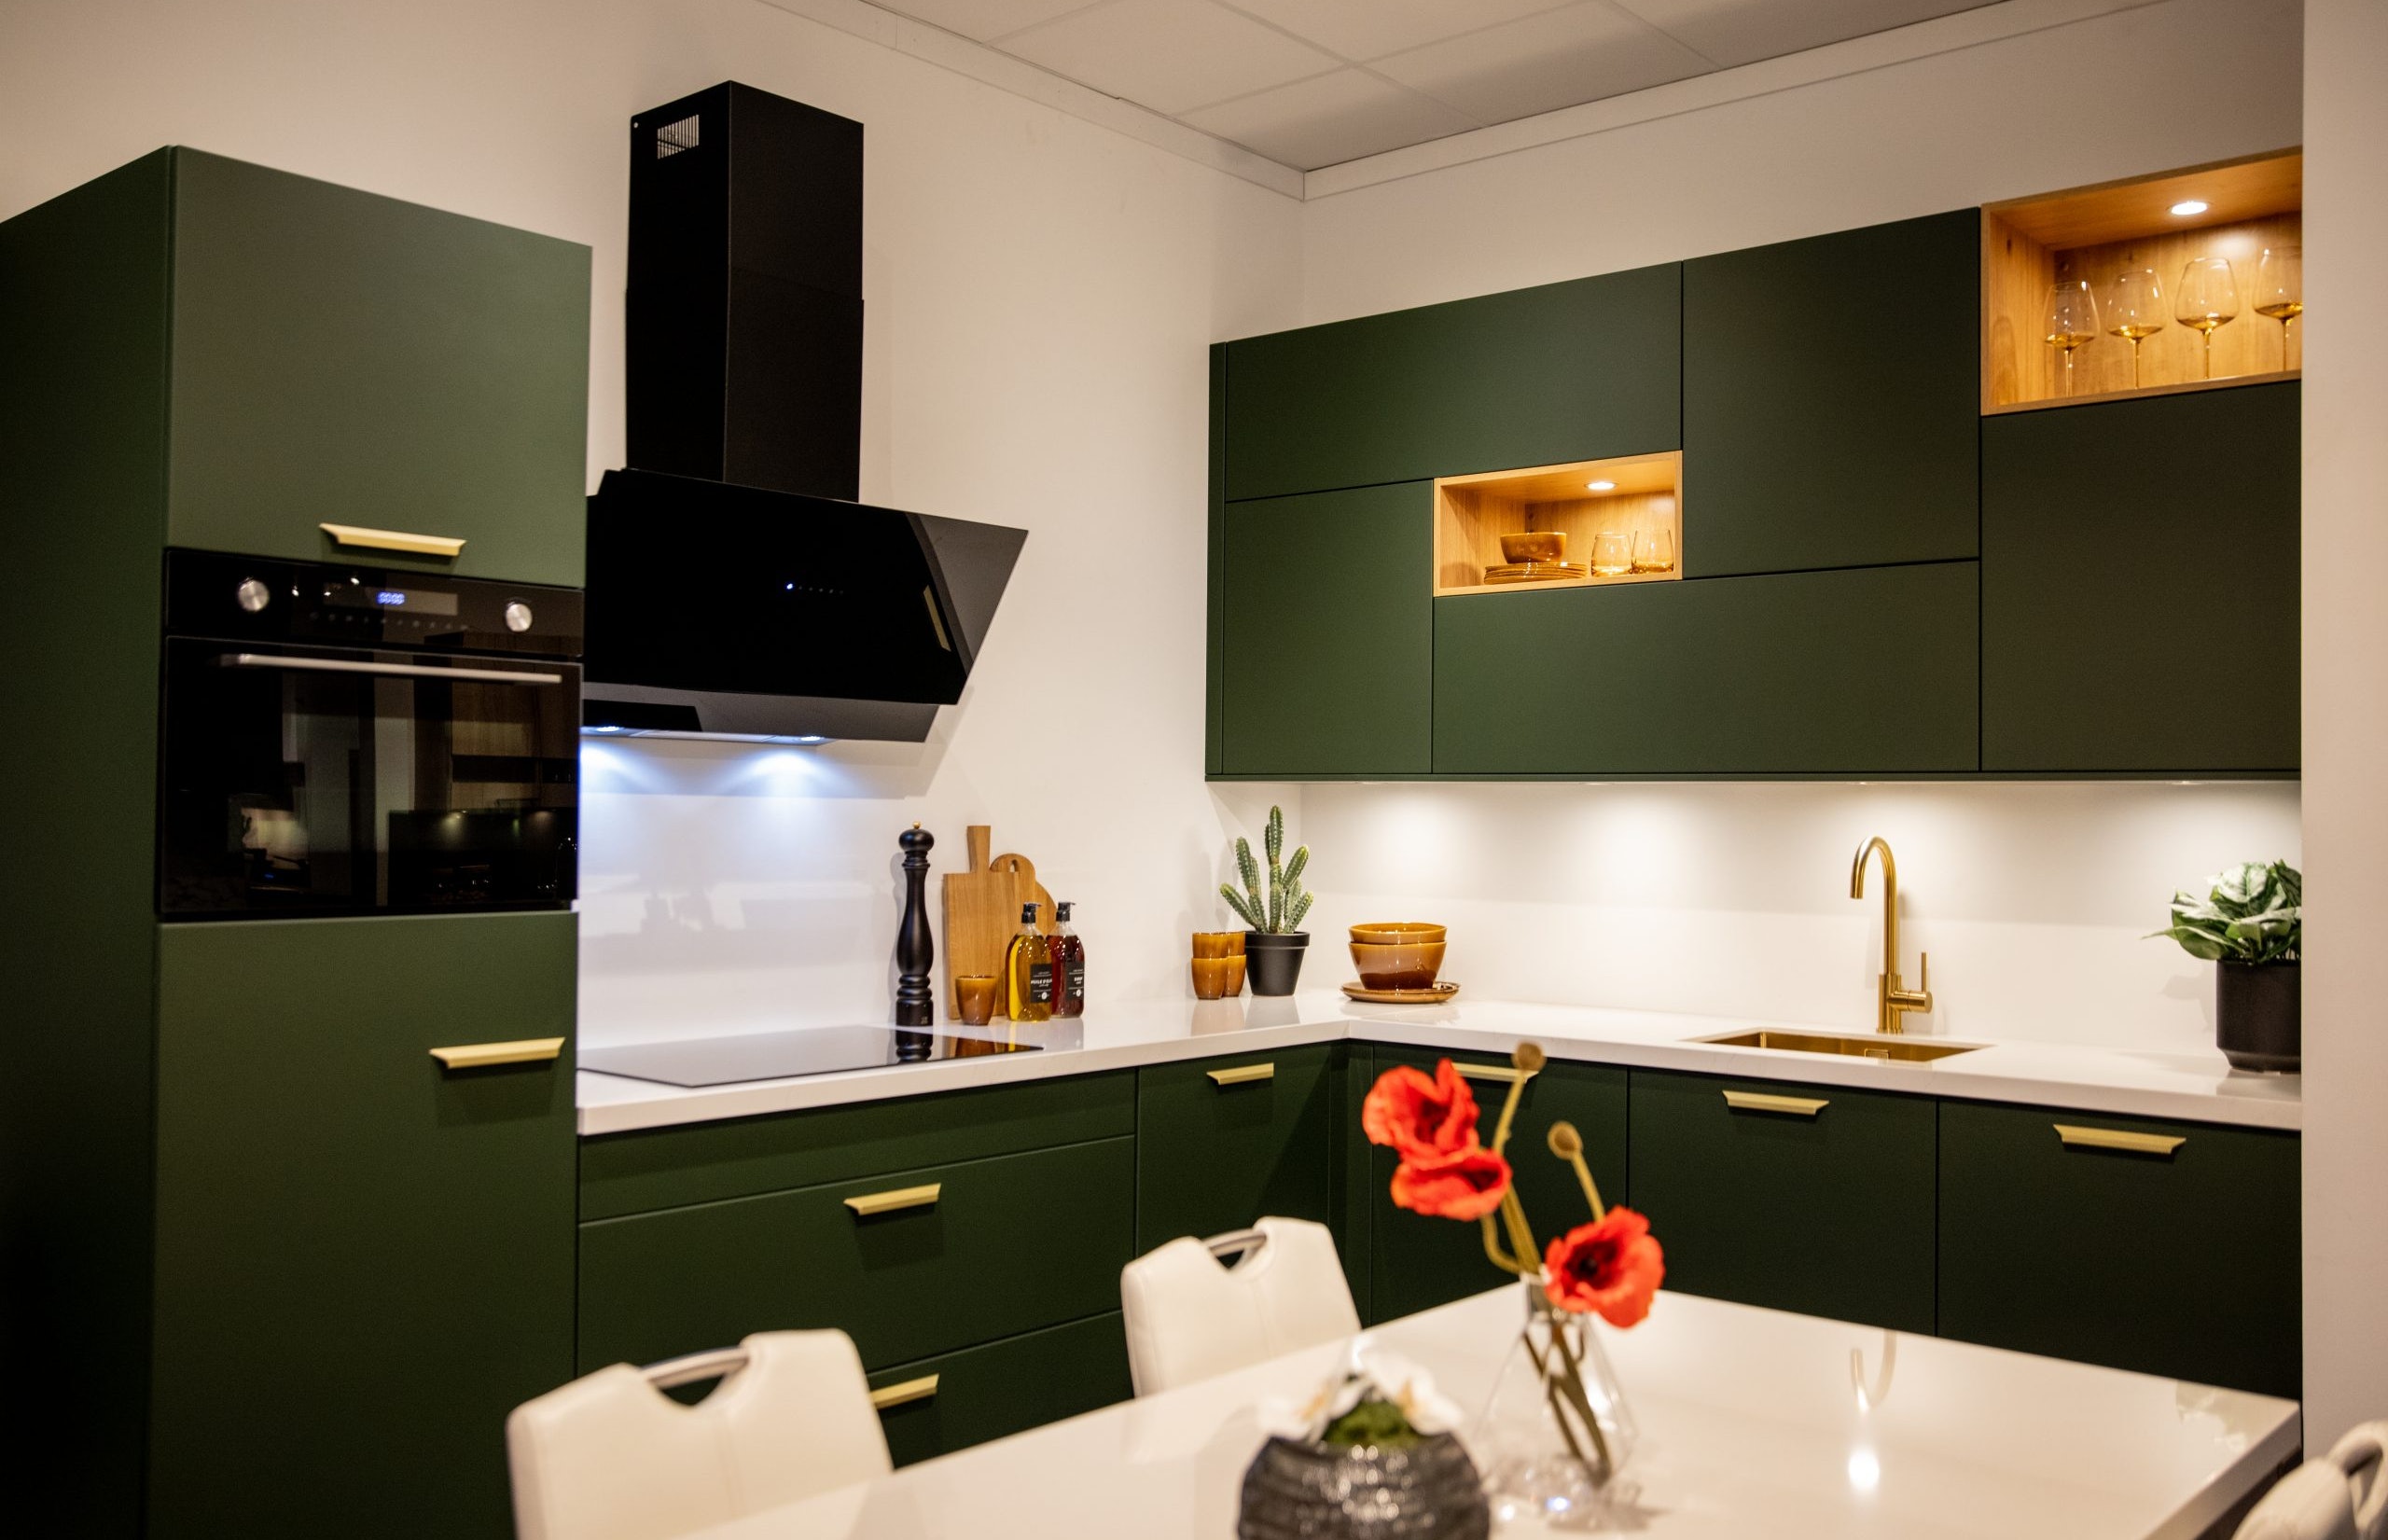 De mat groengelakte fronten geven deze keuken haar unieke uitstraling - Bemmel & Kroon keukens